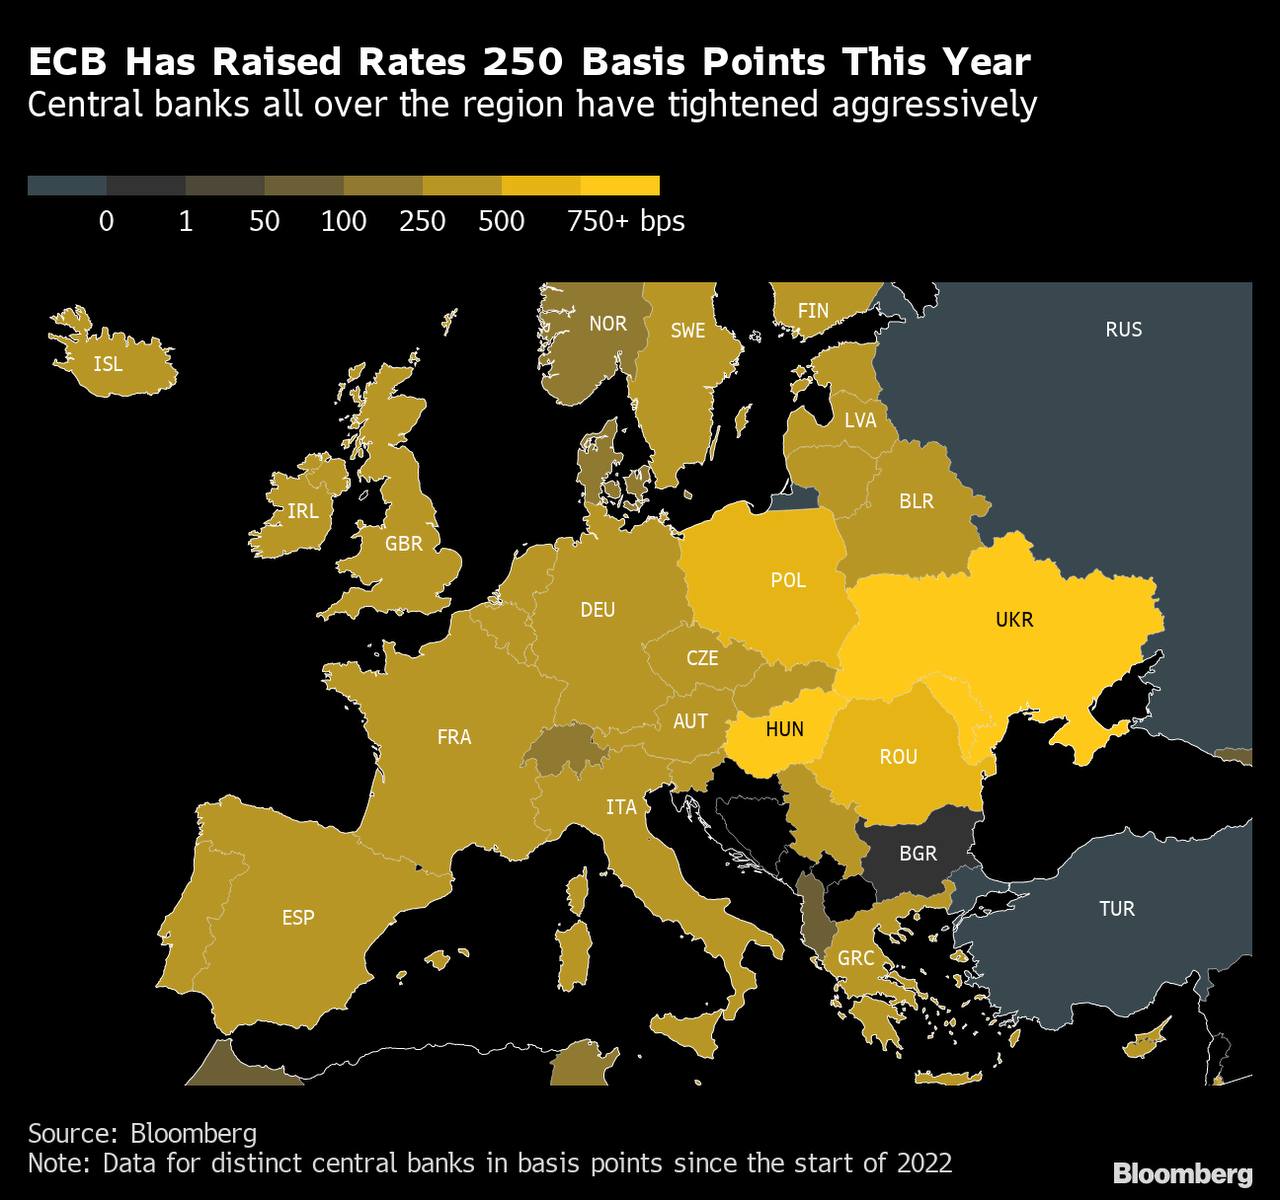 Chủ tịch ECB Lagarde: Sẽ tiếp tục tăng lãi suất nhiều hơn